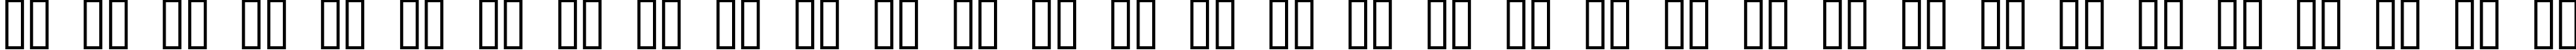 Пример написания русского алфавита шрифтом Pillo Talk Soft